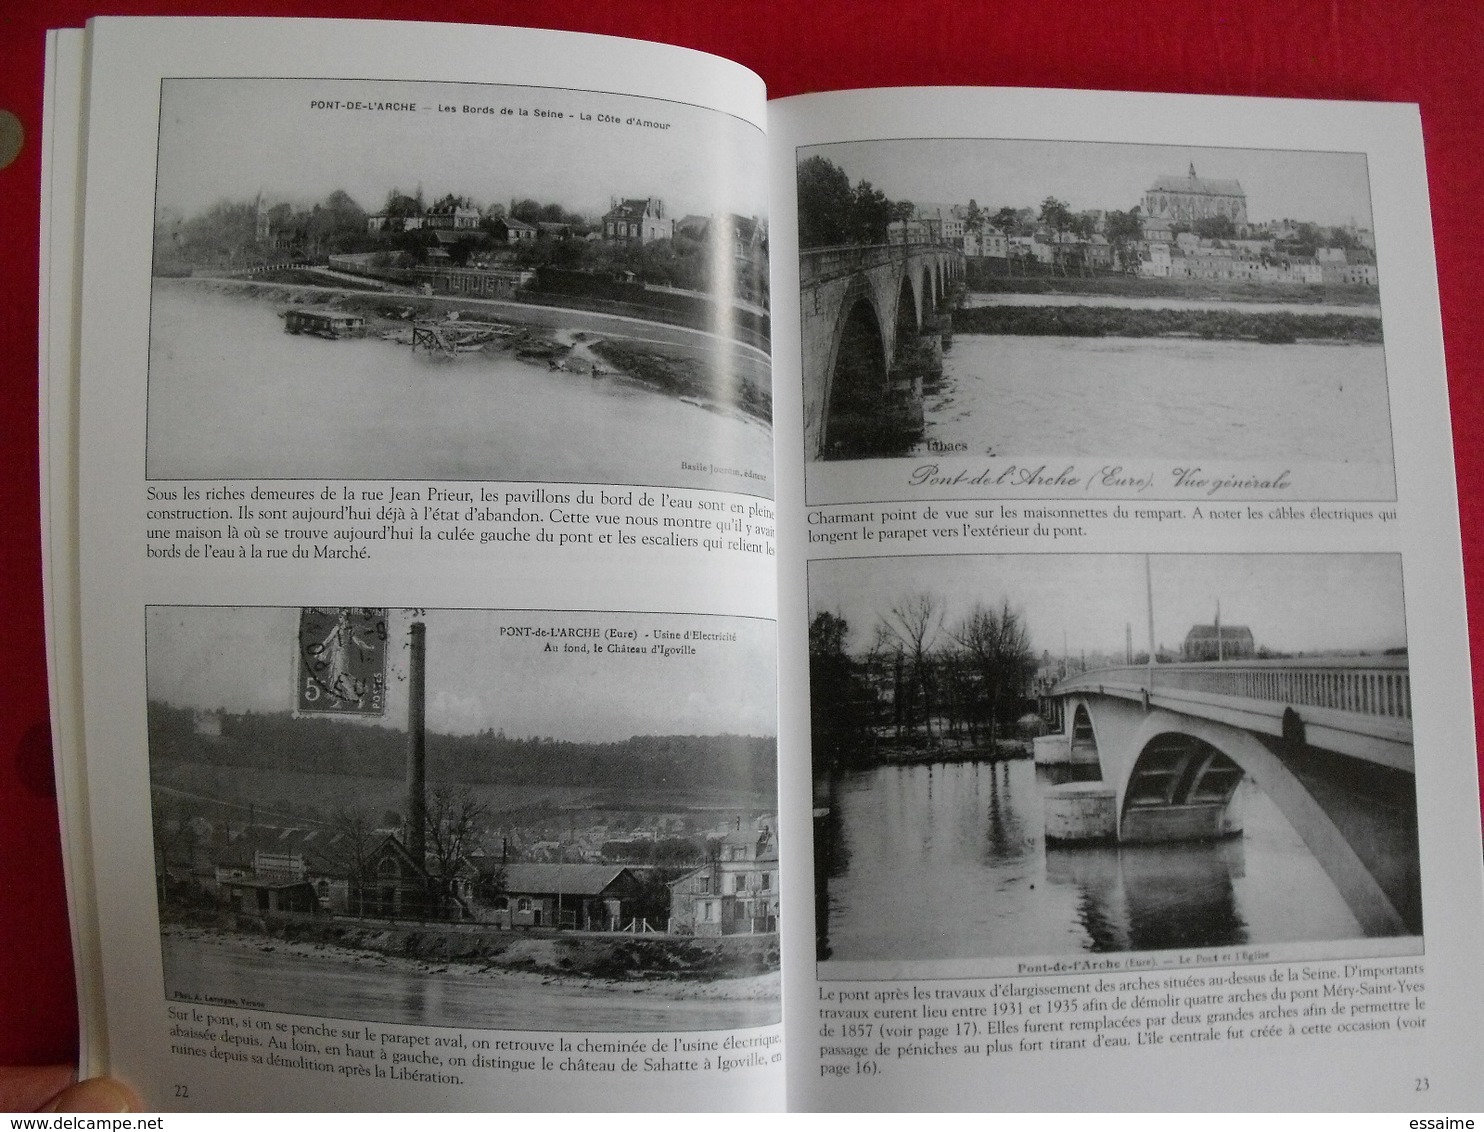 Pont-de-l'Arche. Eure. Armand Launay. Mémoire En Images. éditions Alan Sutton. 2008. Cartes Postales Photos - Normandie